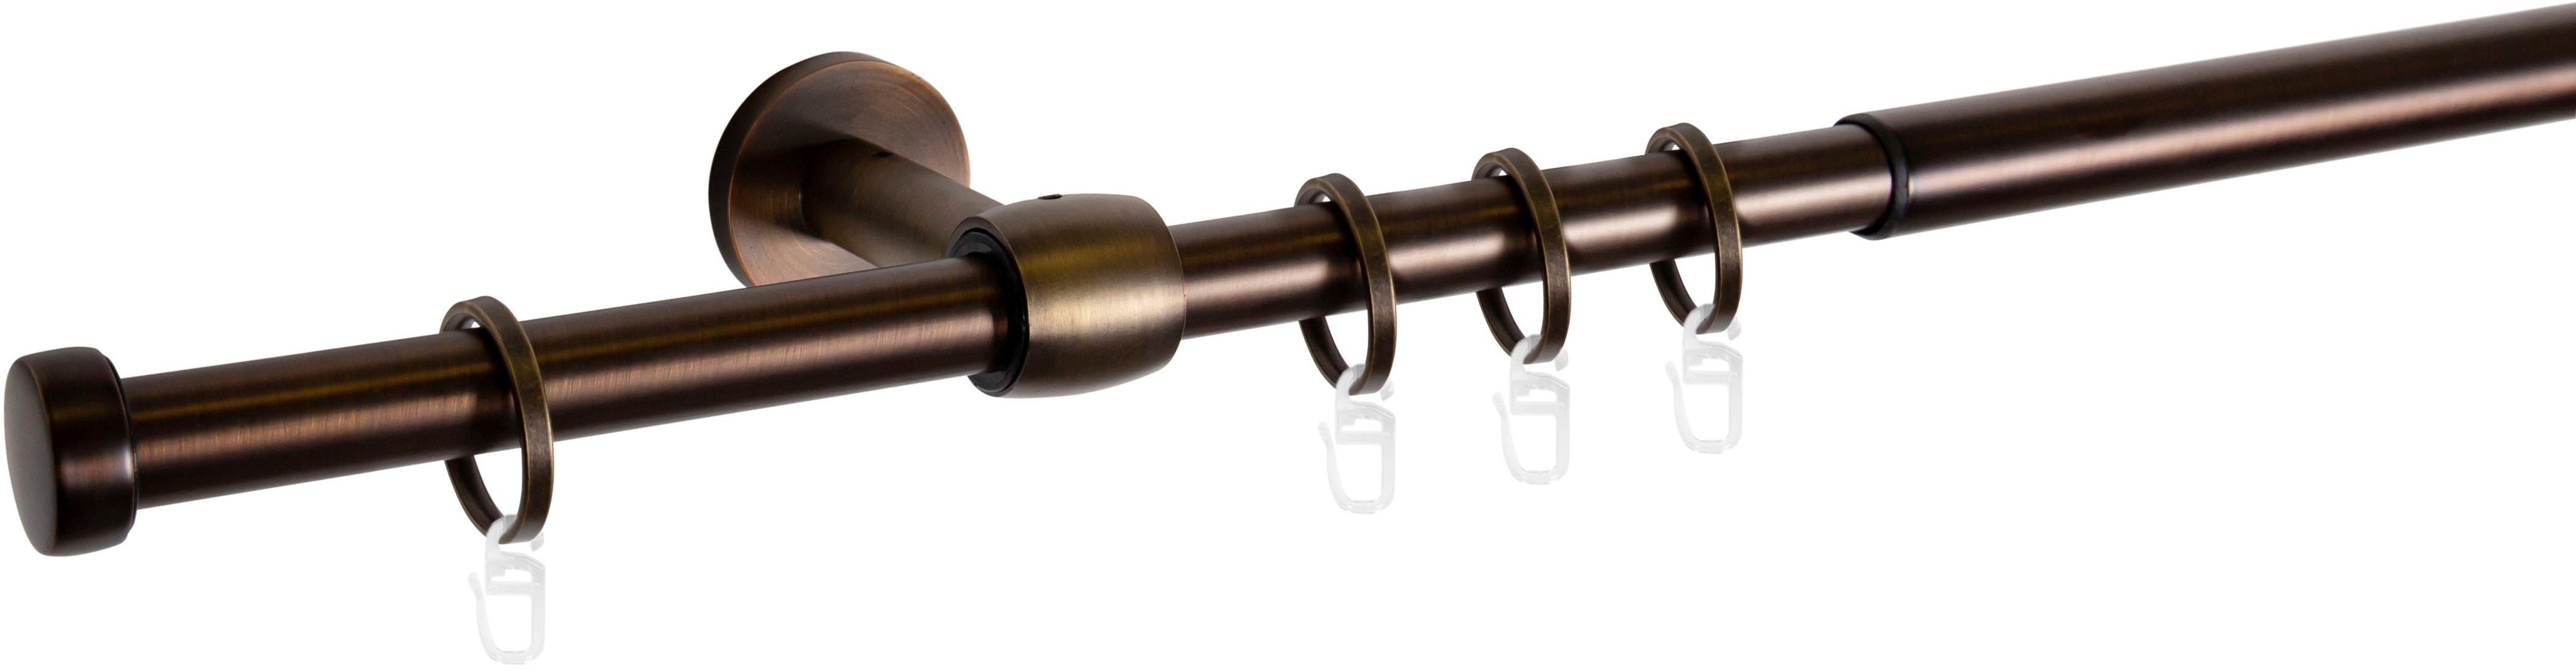 Gardinenstange Cap-Noble, mydeco, Ø 16 mm, 1-läufig, ausziehbar bronzefarben